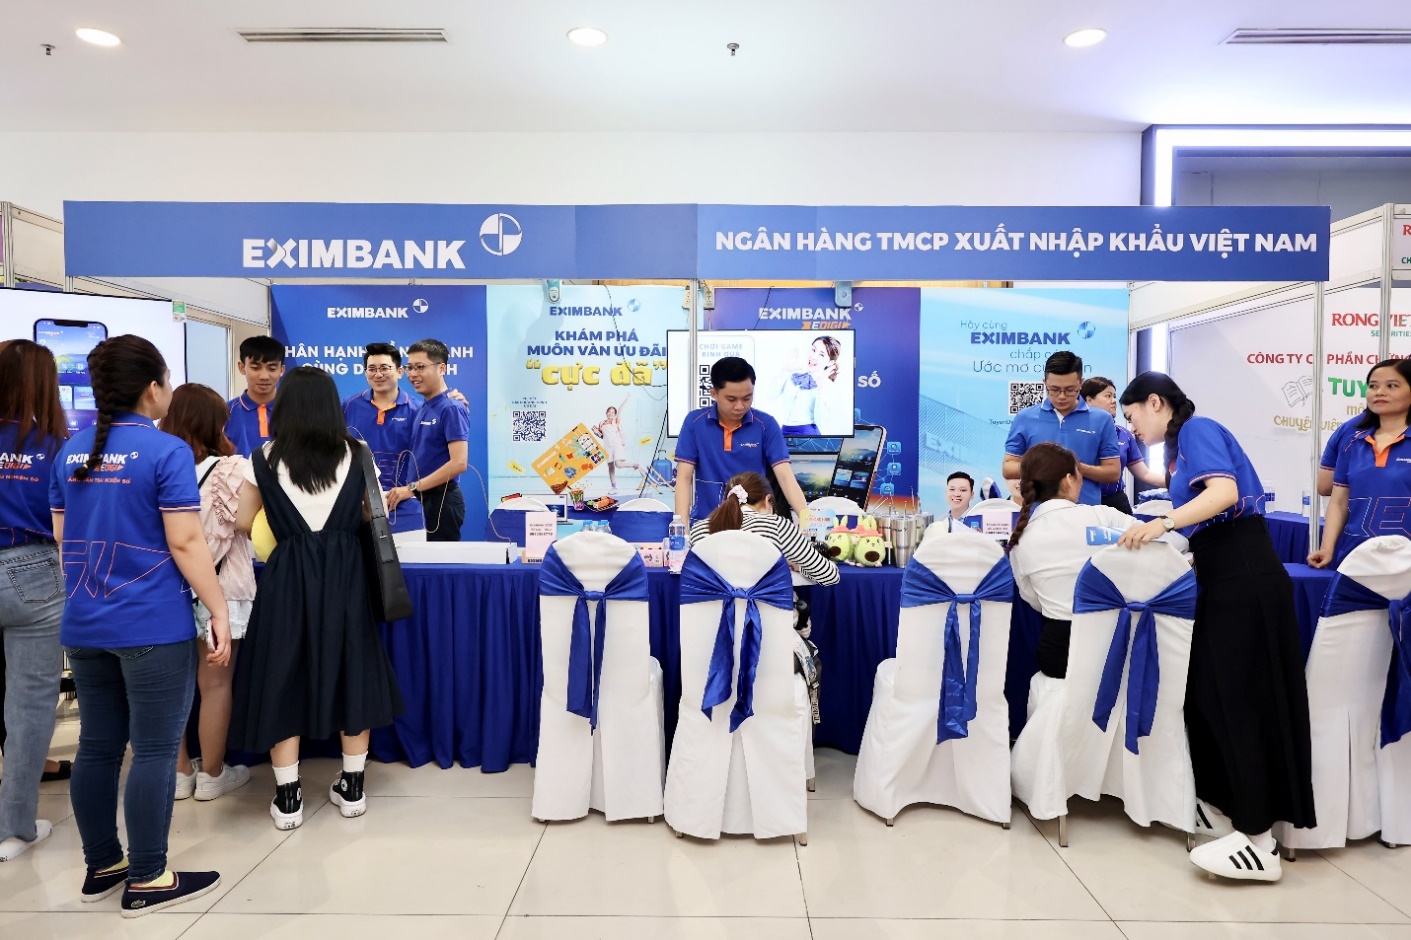 Eximbank tài trợ học bổng trị giá 300 triệu đồng cho Đại học Kinh tế TP.HCM- Ảnh 3.